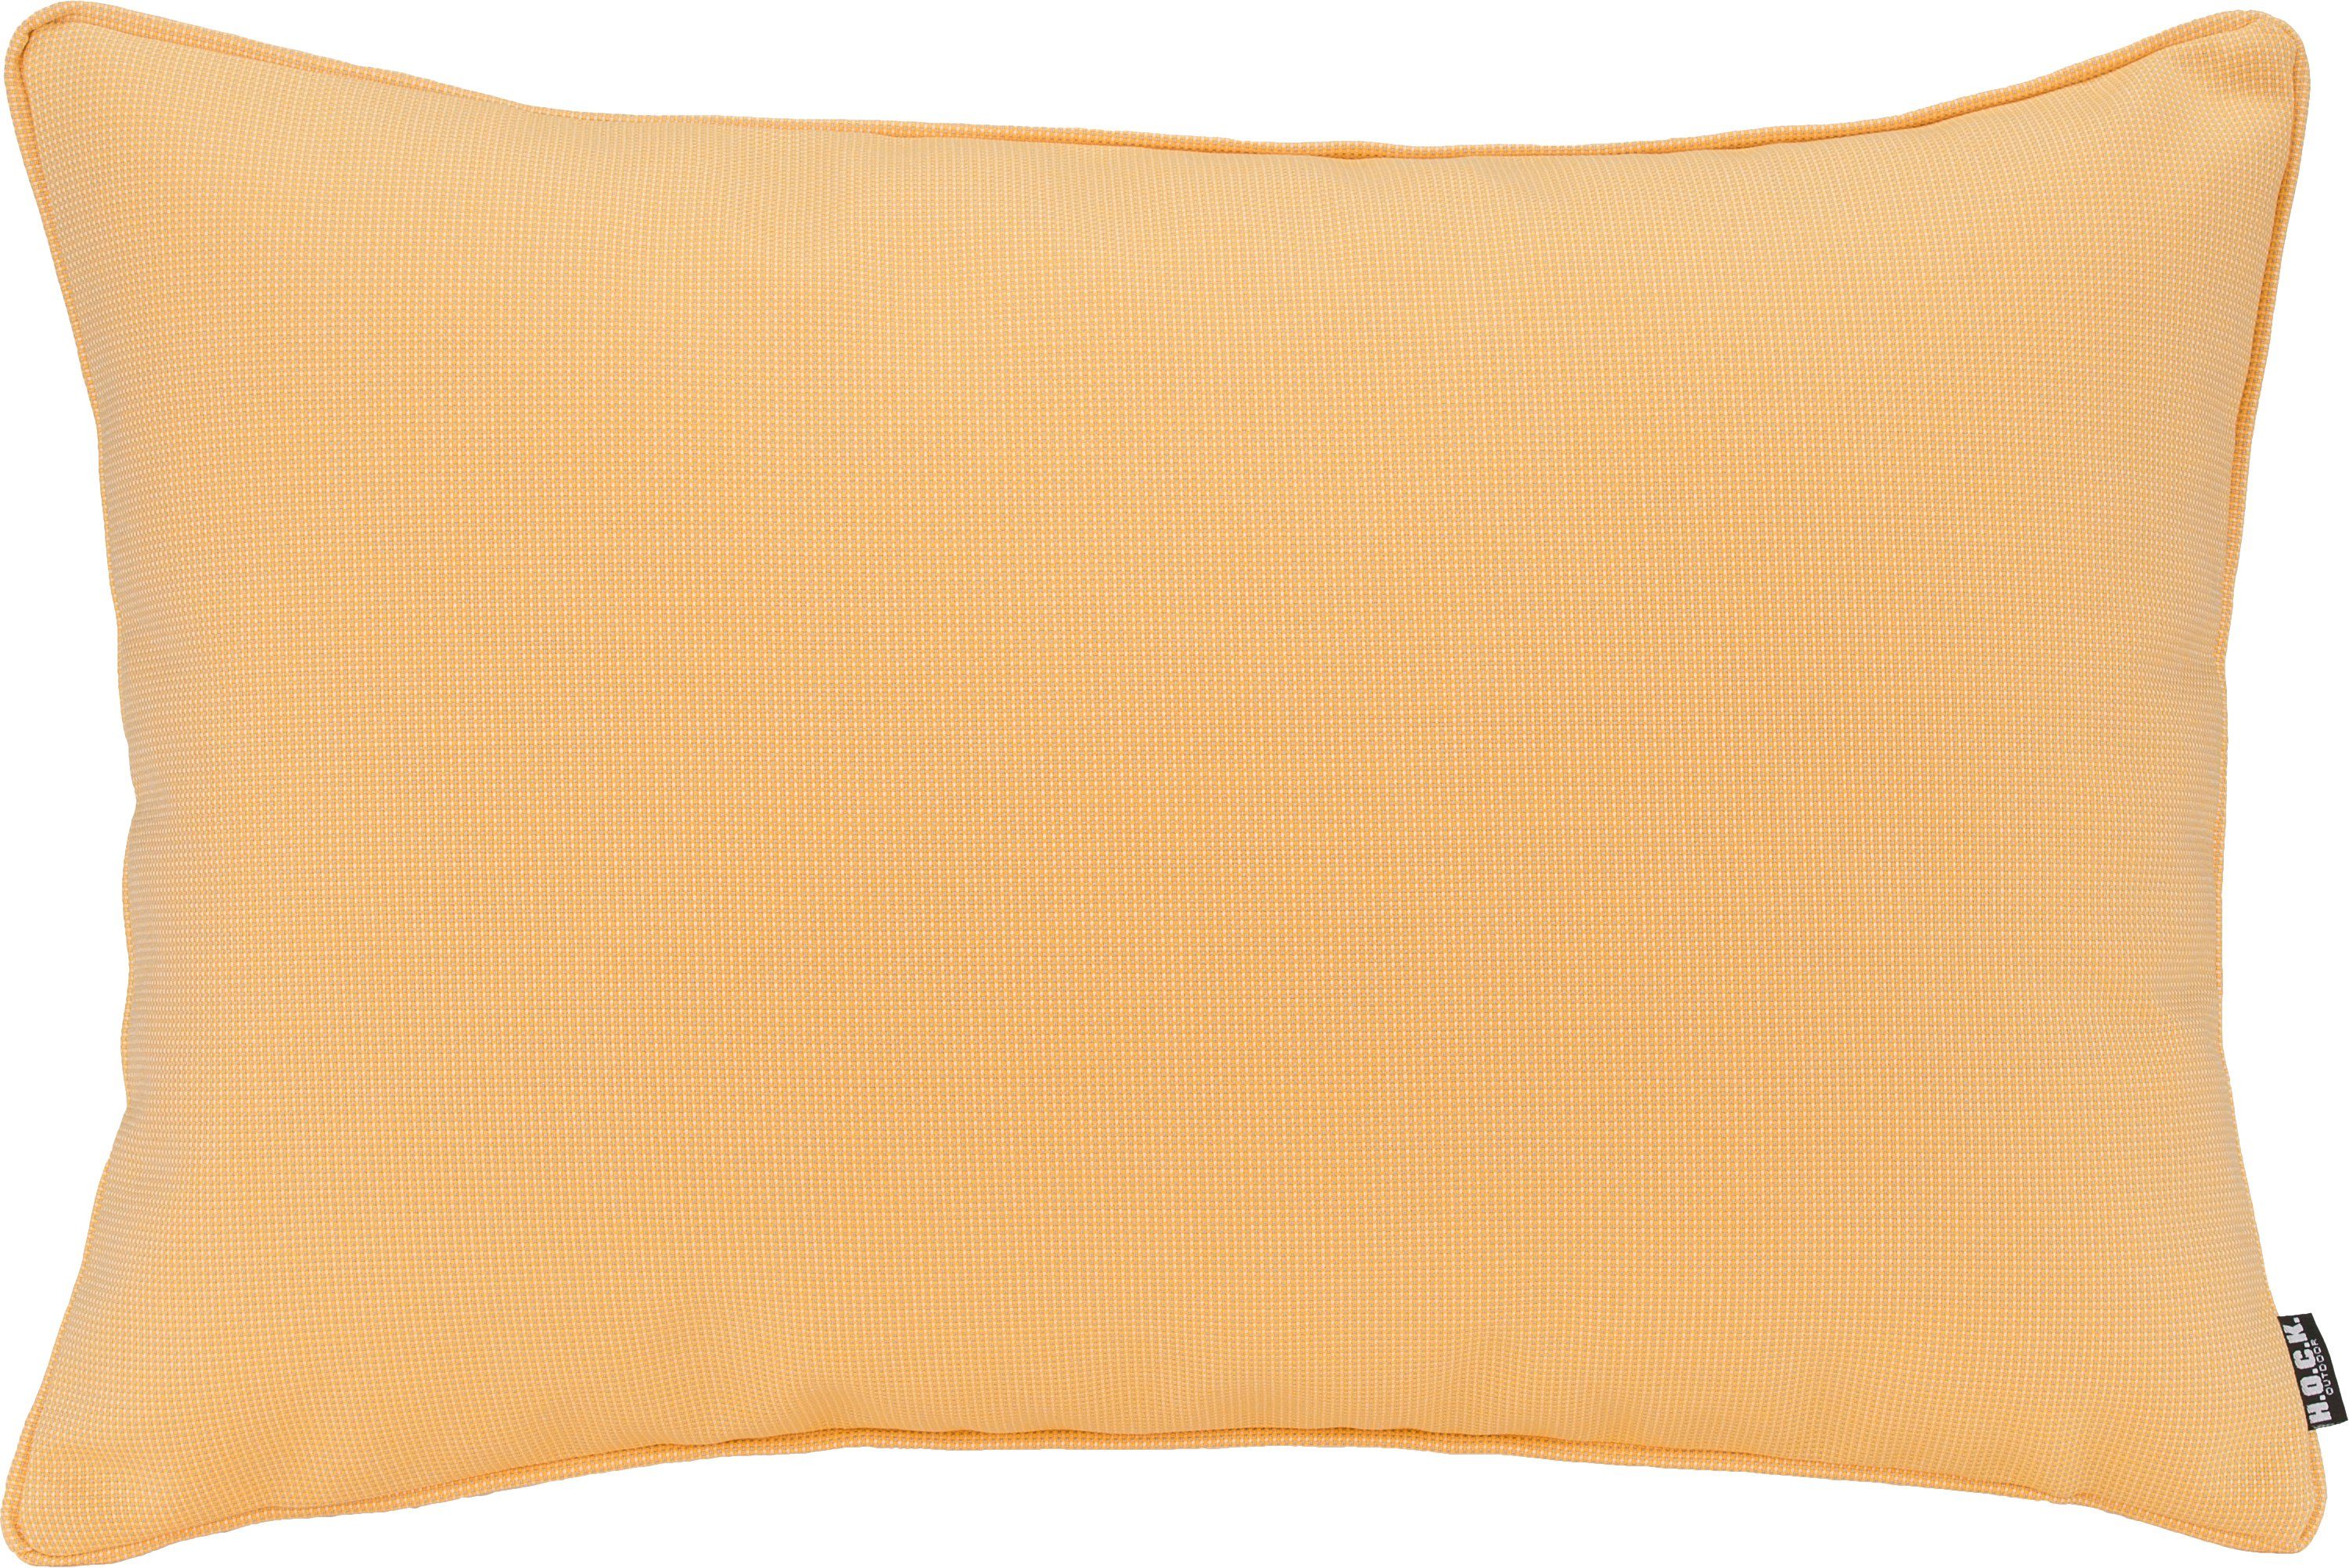 H.O.C.K. Dekokissen Sparkle, einfarbig, Wendekissenhülle mit Füllung, 1 Stück gelb